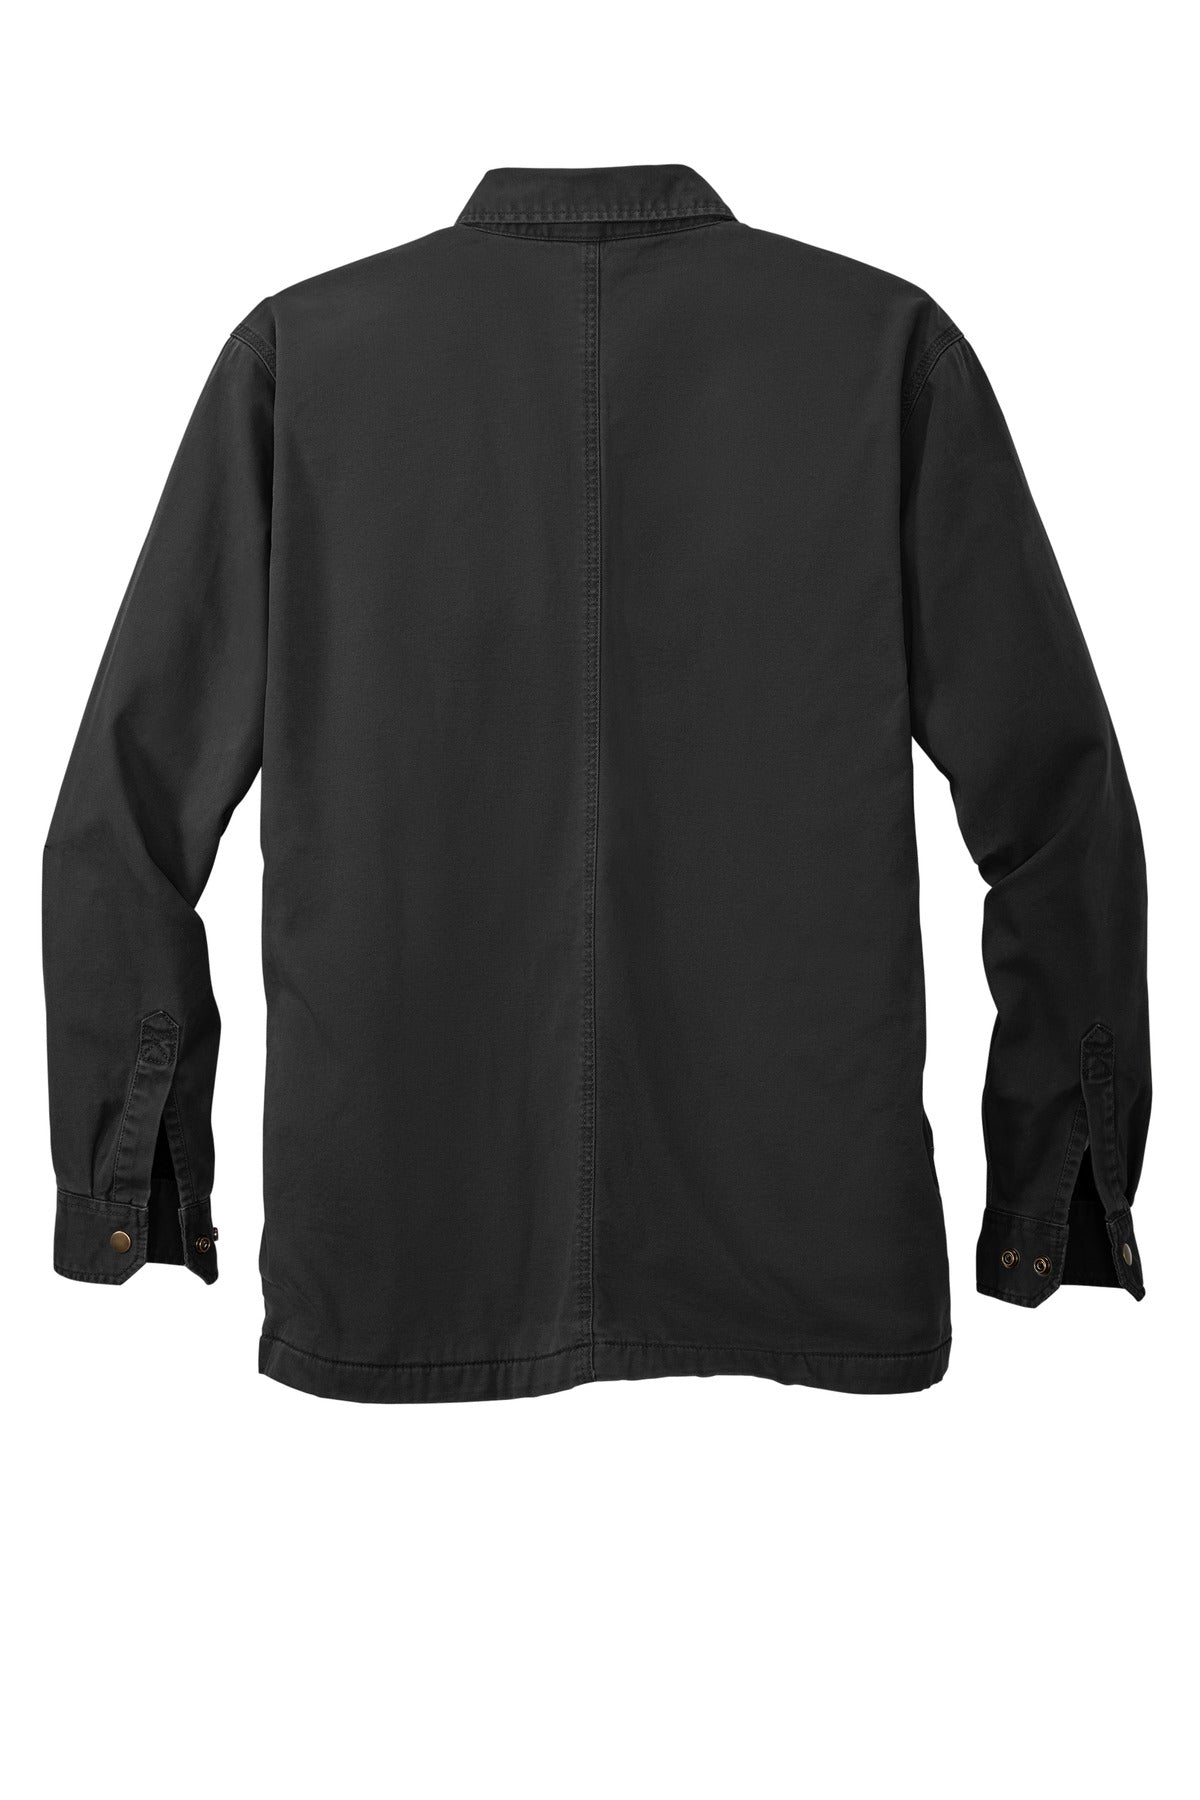 Carhartt Rugged Flex Fleece-Lined Shirt Jac CT105532